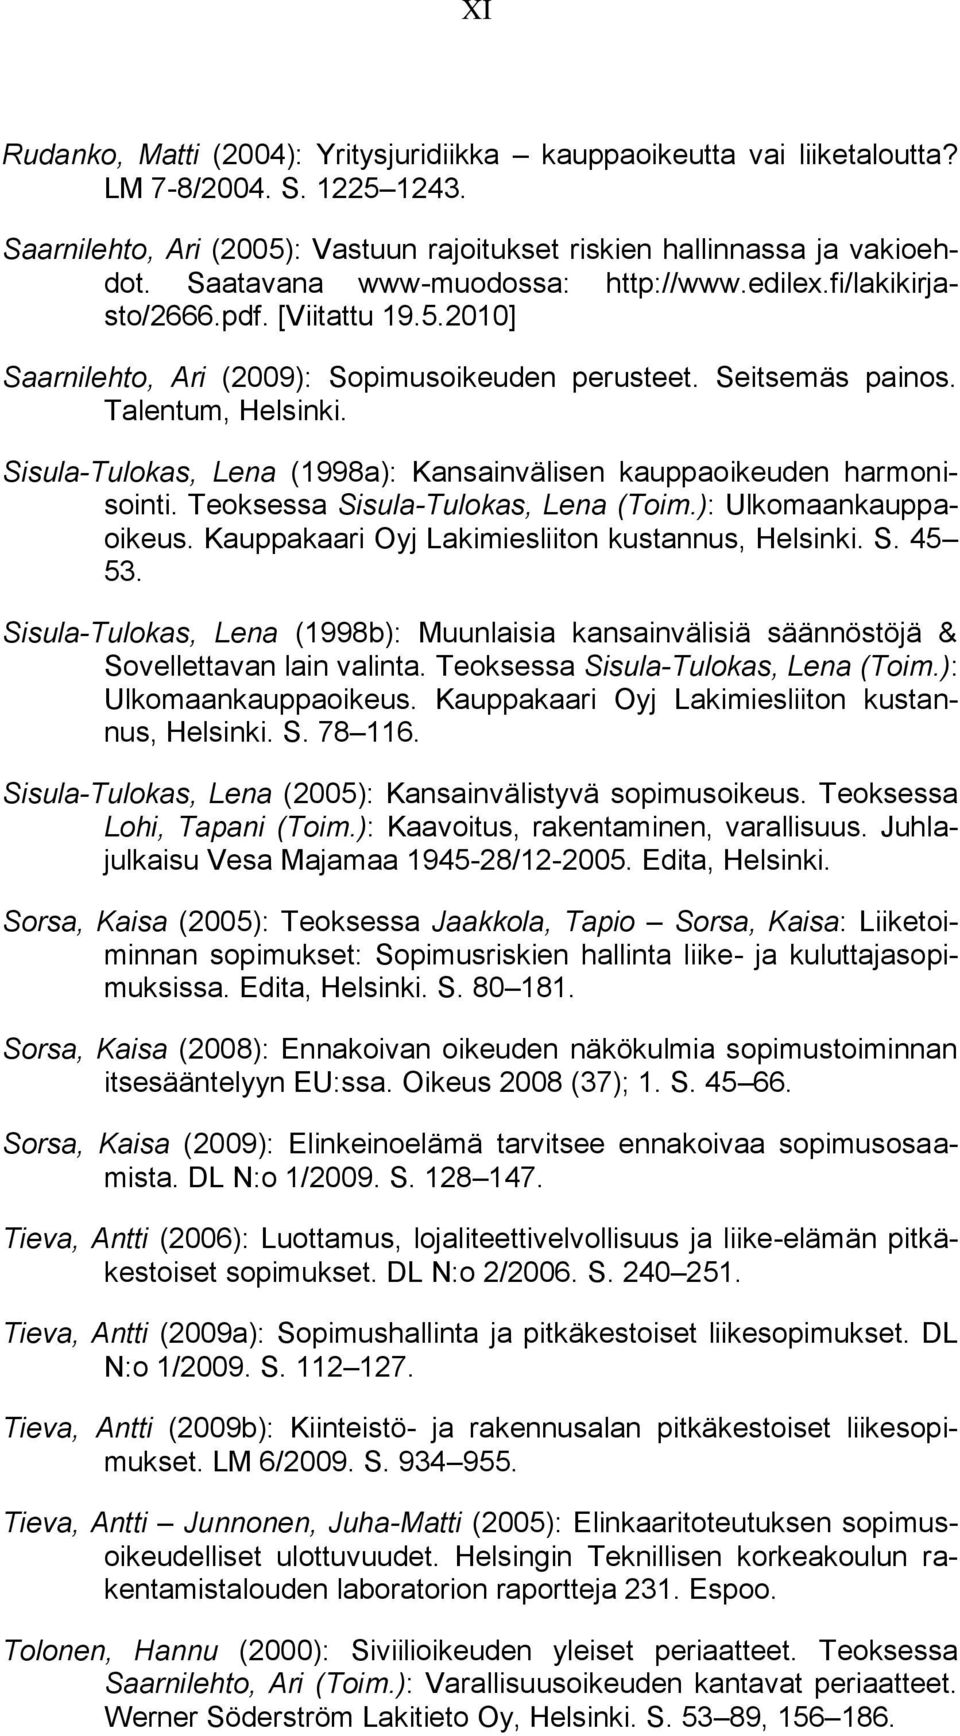 Sisula-Tulokas, Lena (1998a): Kansainvälisen kauppaoikeuden harmonisointi. Teoksessa Sisula-Tulokas, Lena (Toim.): Ulkomaankauppaoikeus. Kauppakaari Oyj Lakimiesliiton kustannus, Helsinki. S. 45 53.